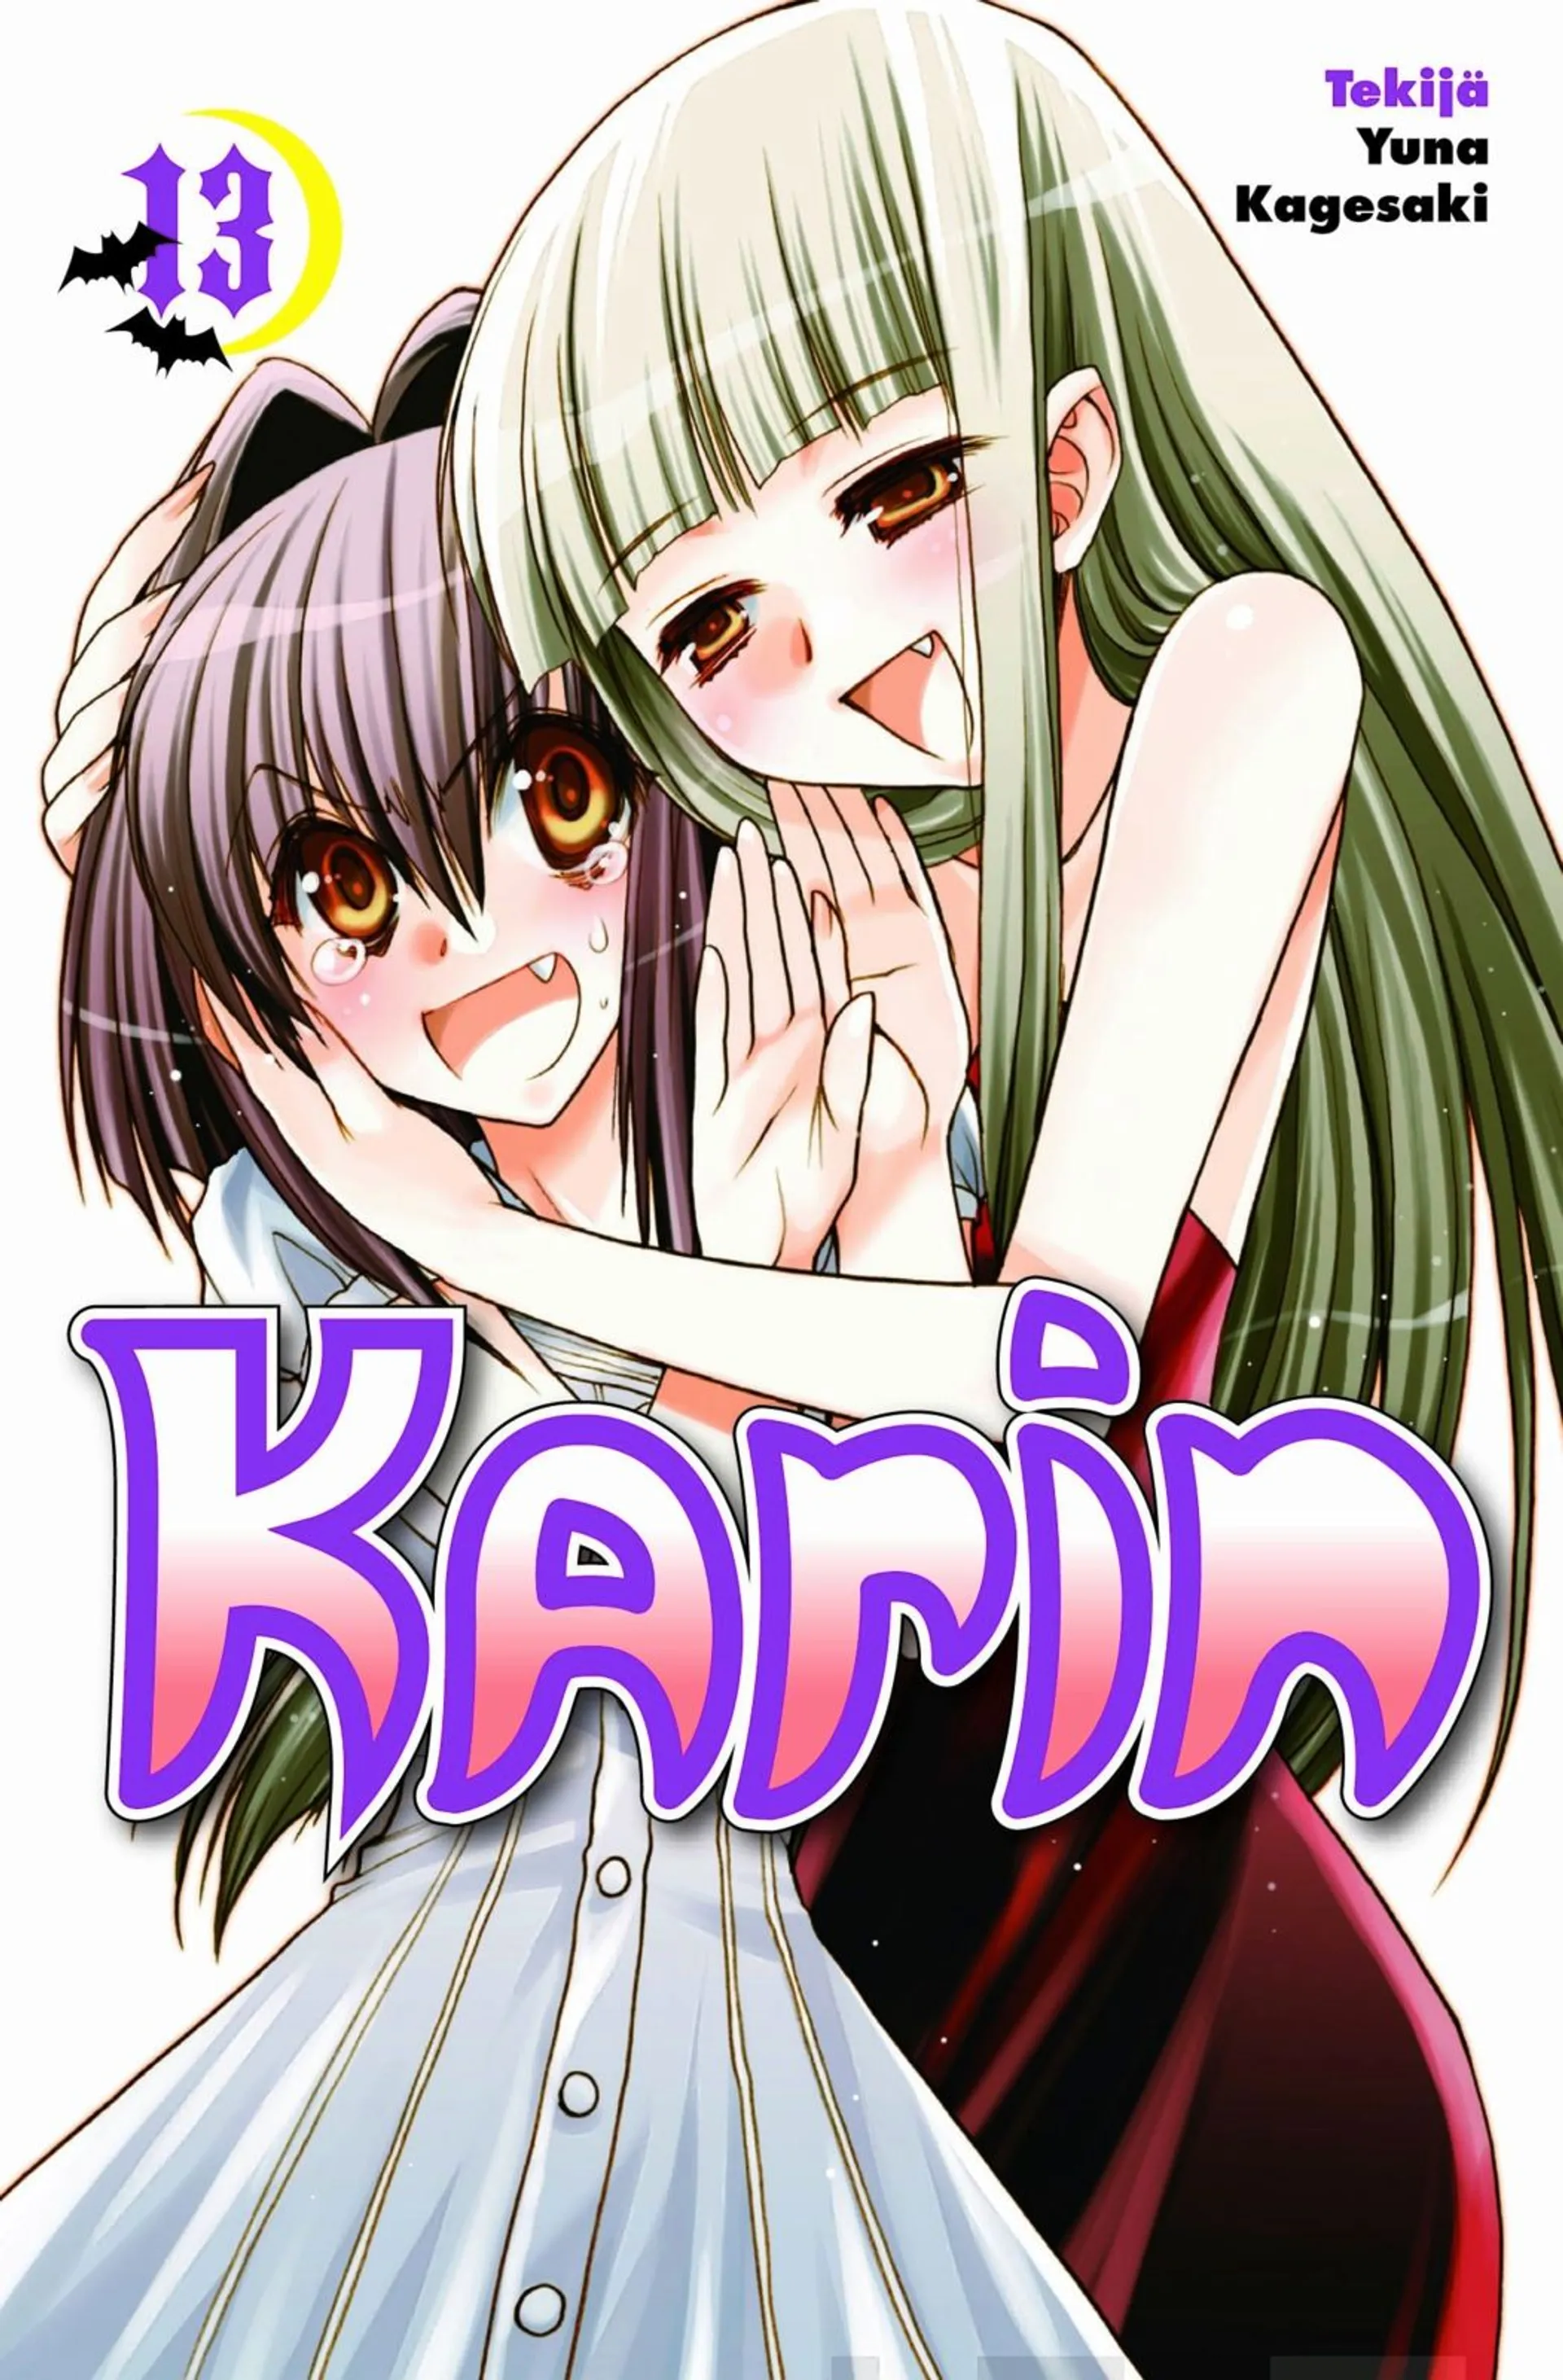 Karin 13